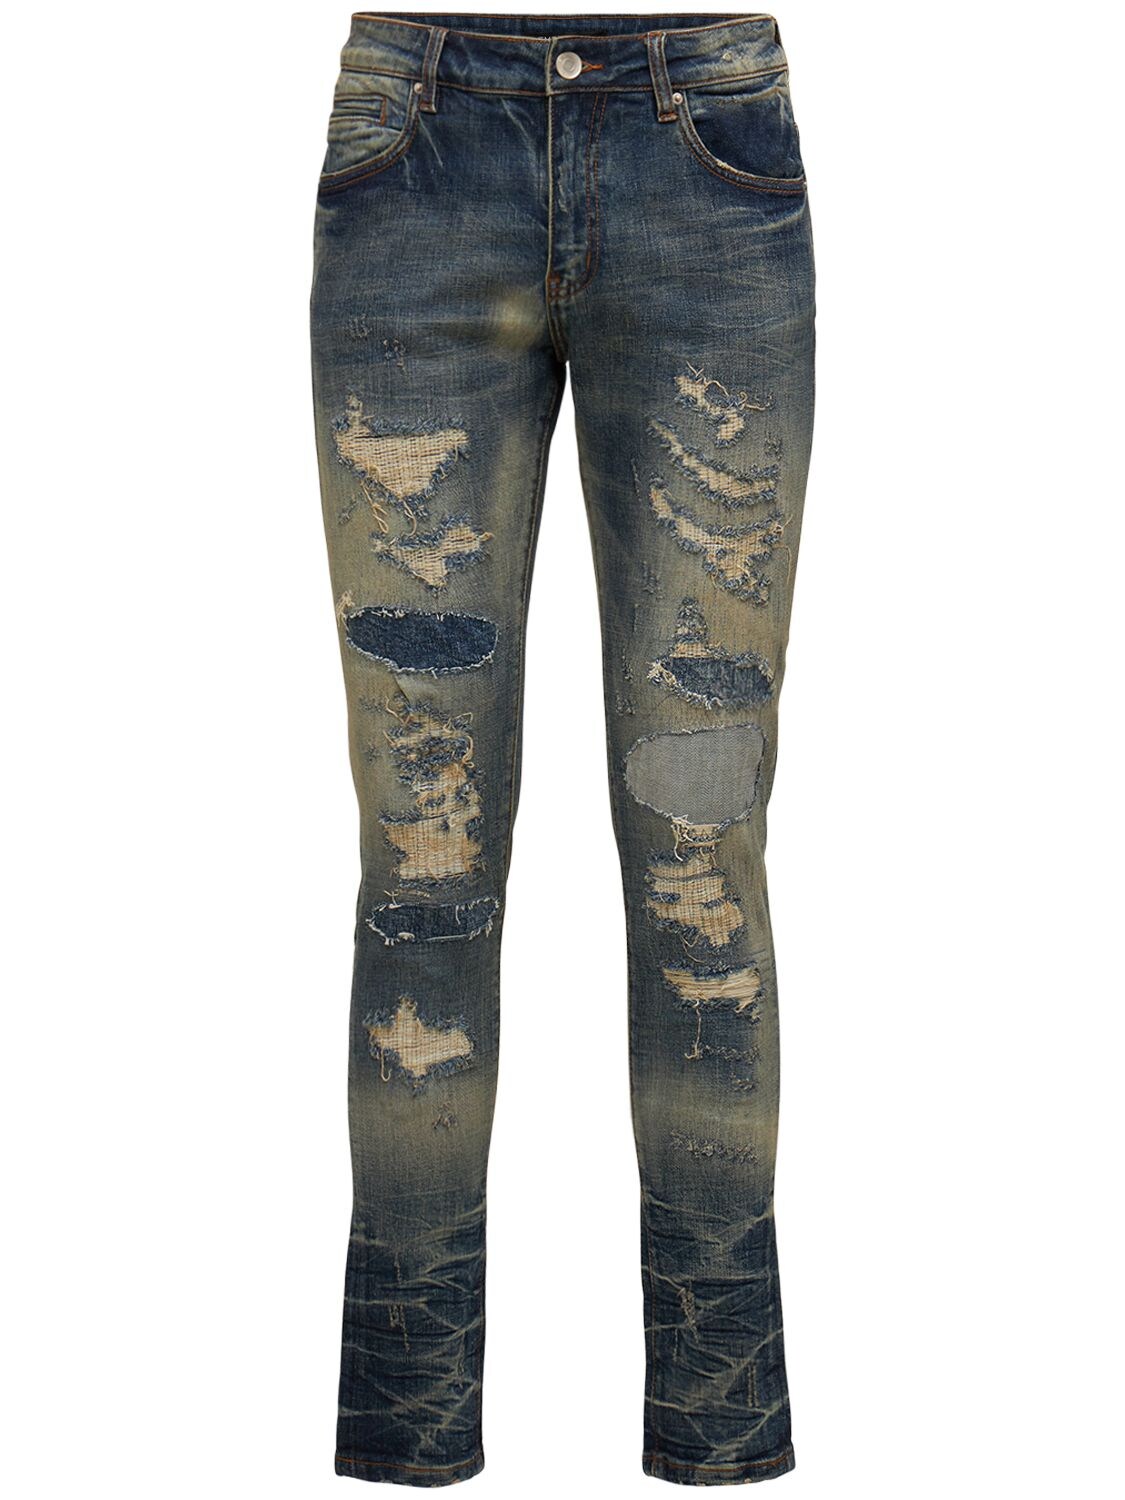 EMBELLISH Damien Cotton Denim Jeans